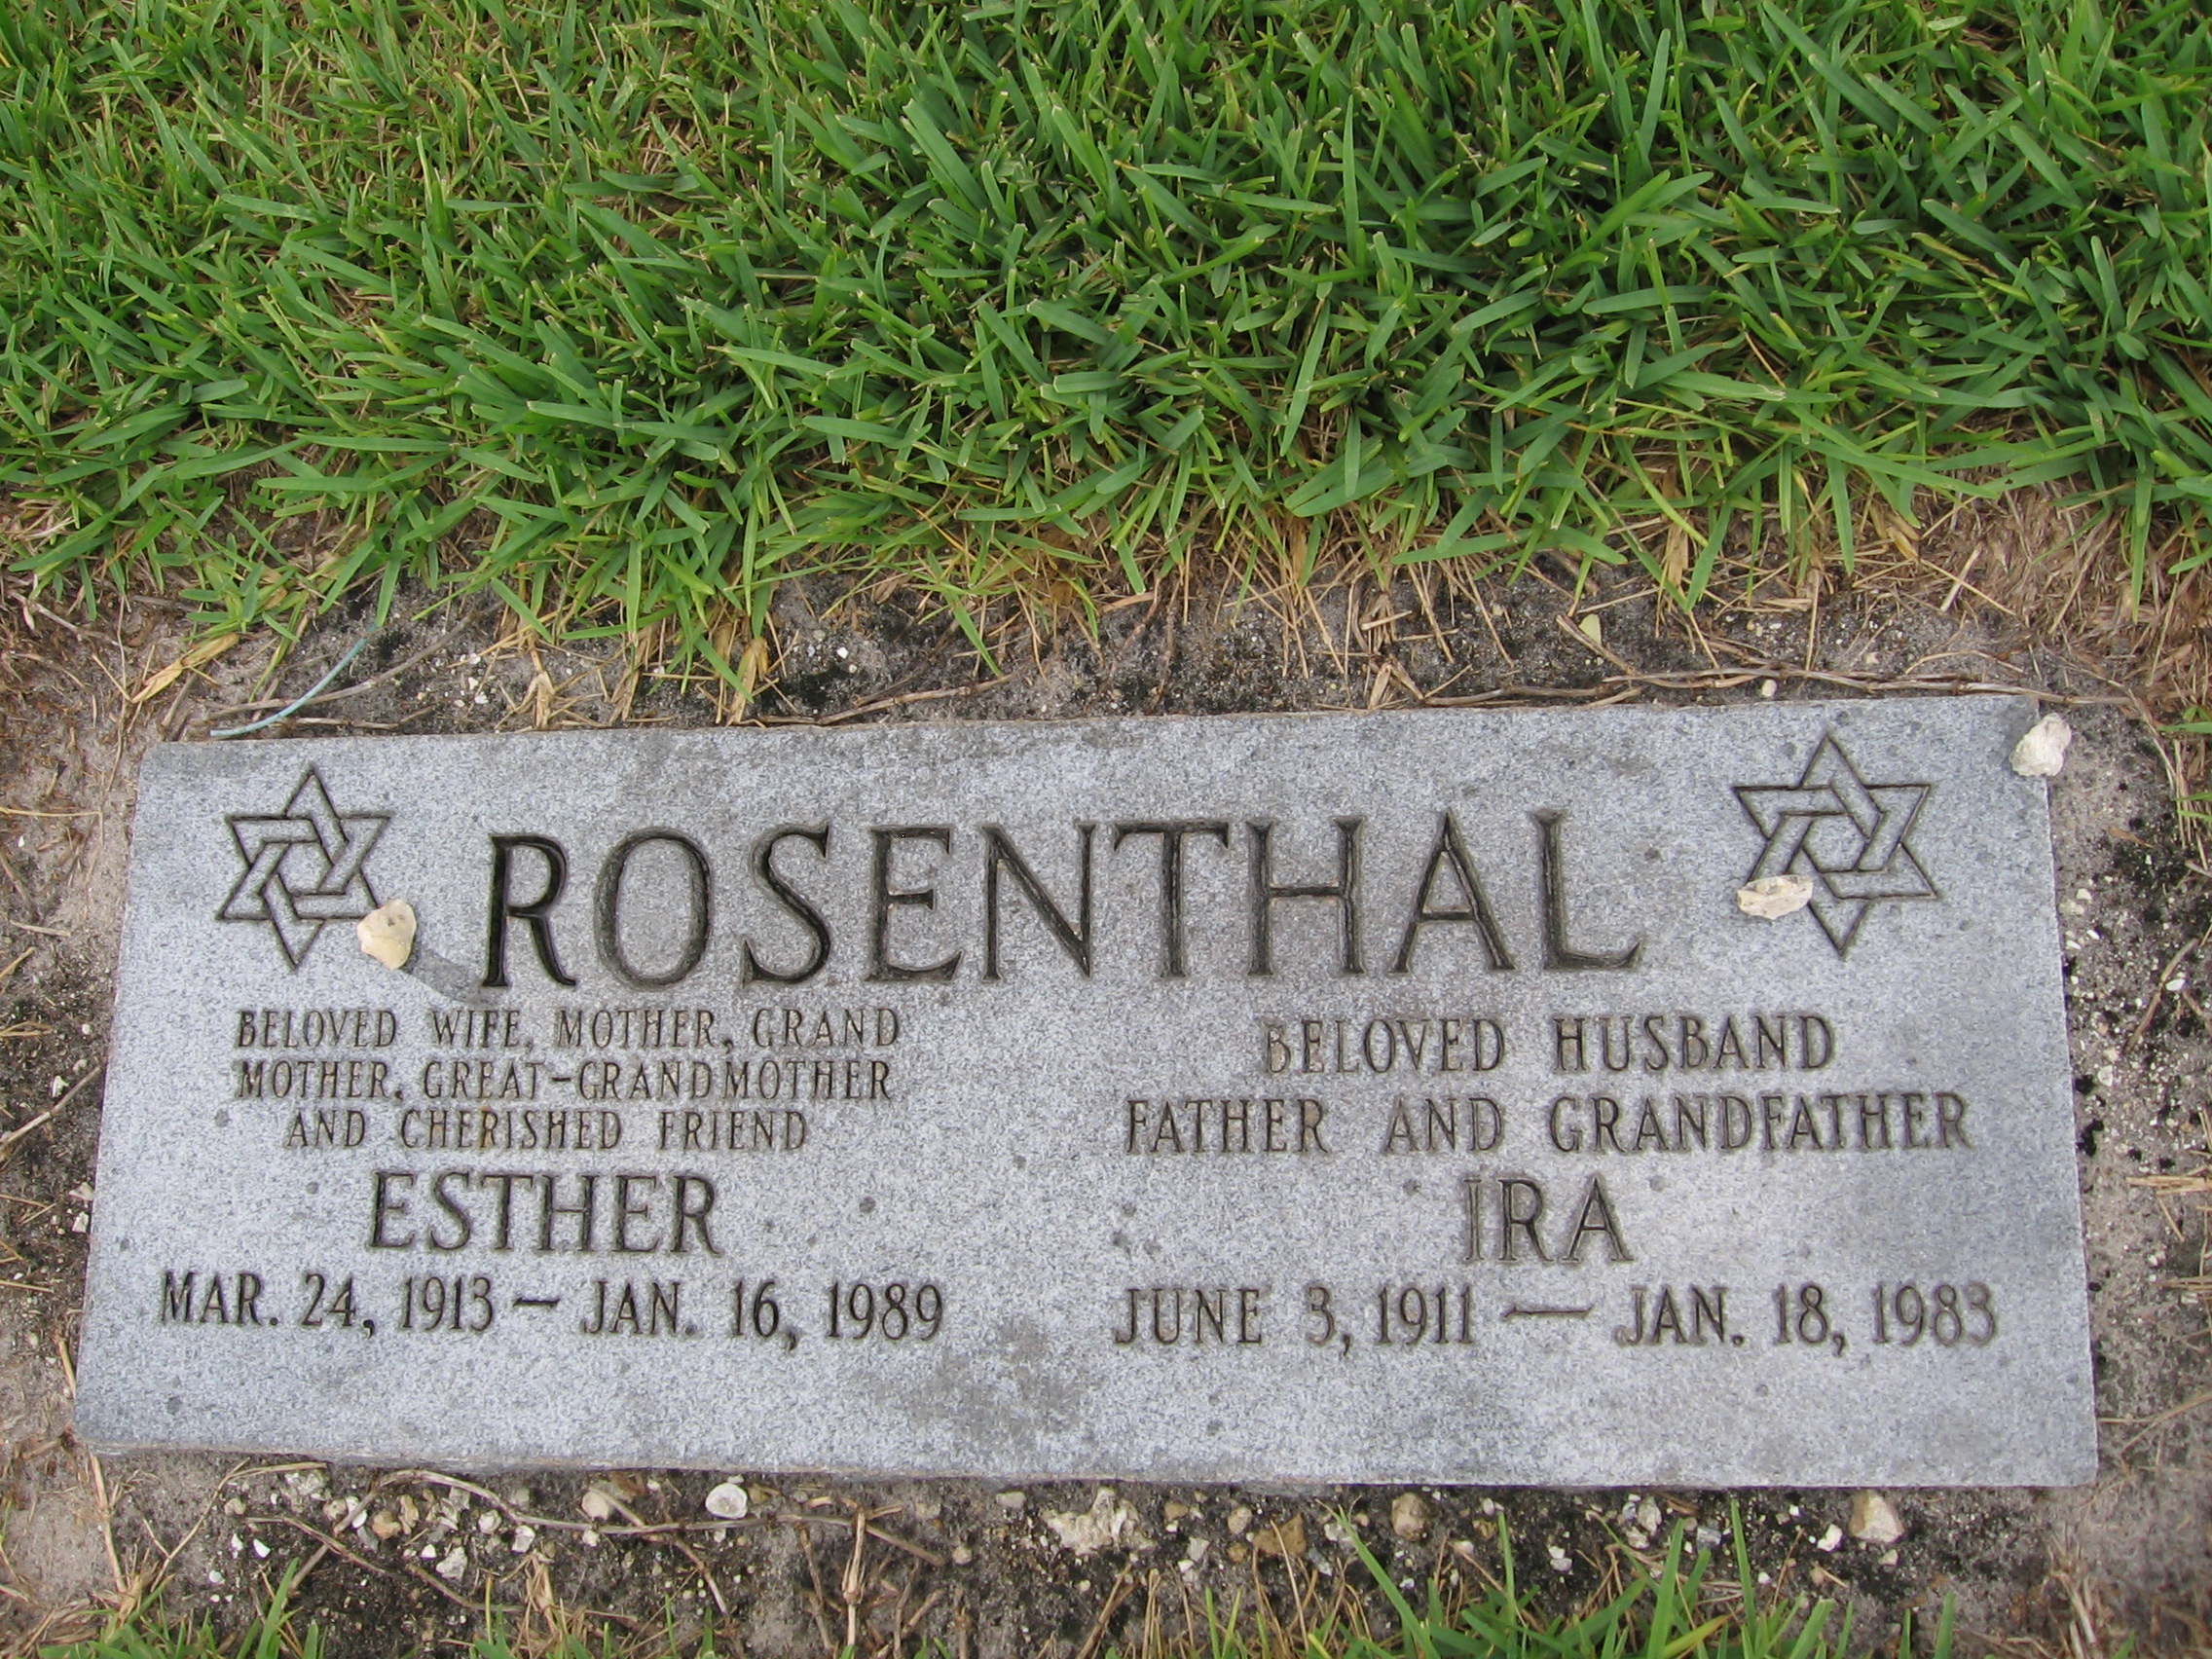 Esther Rosenthal